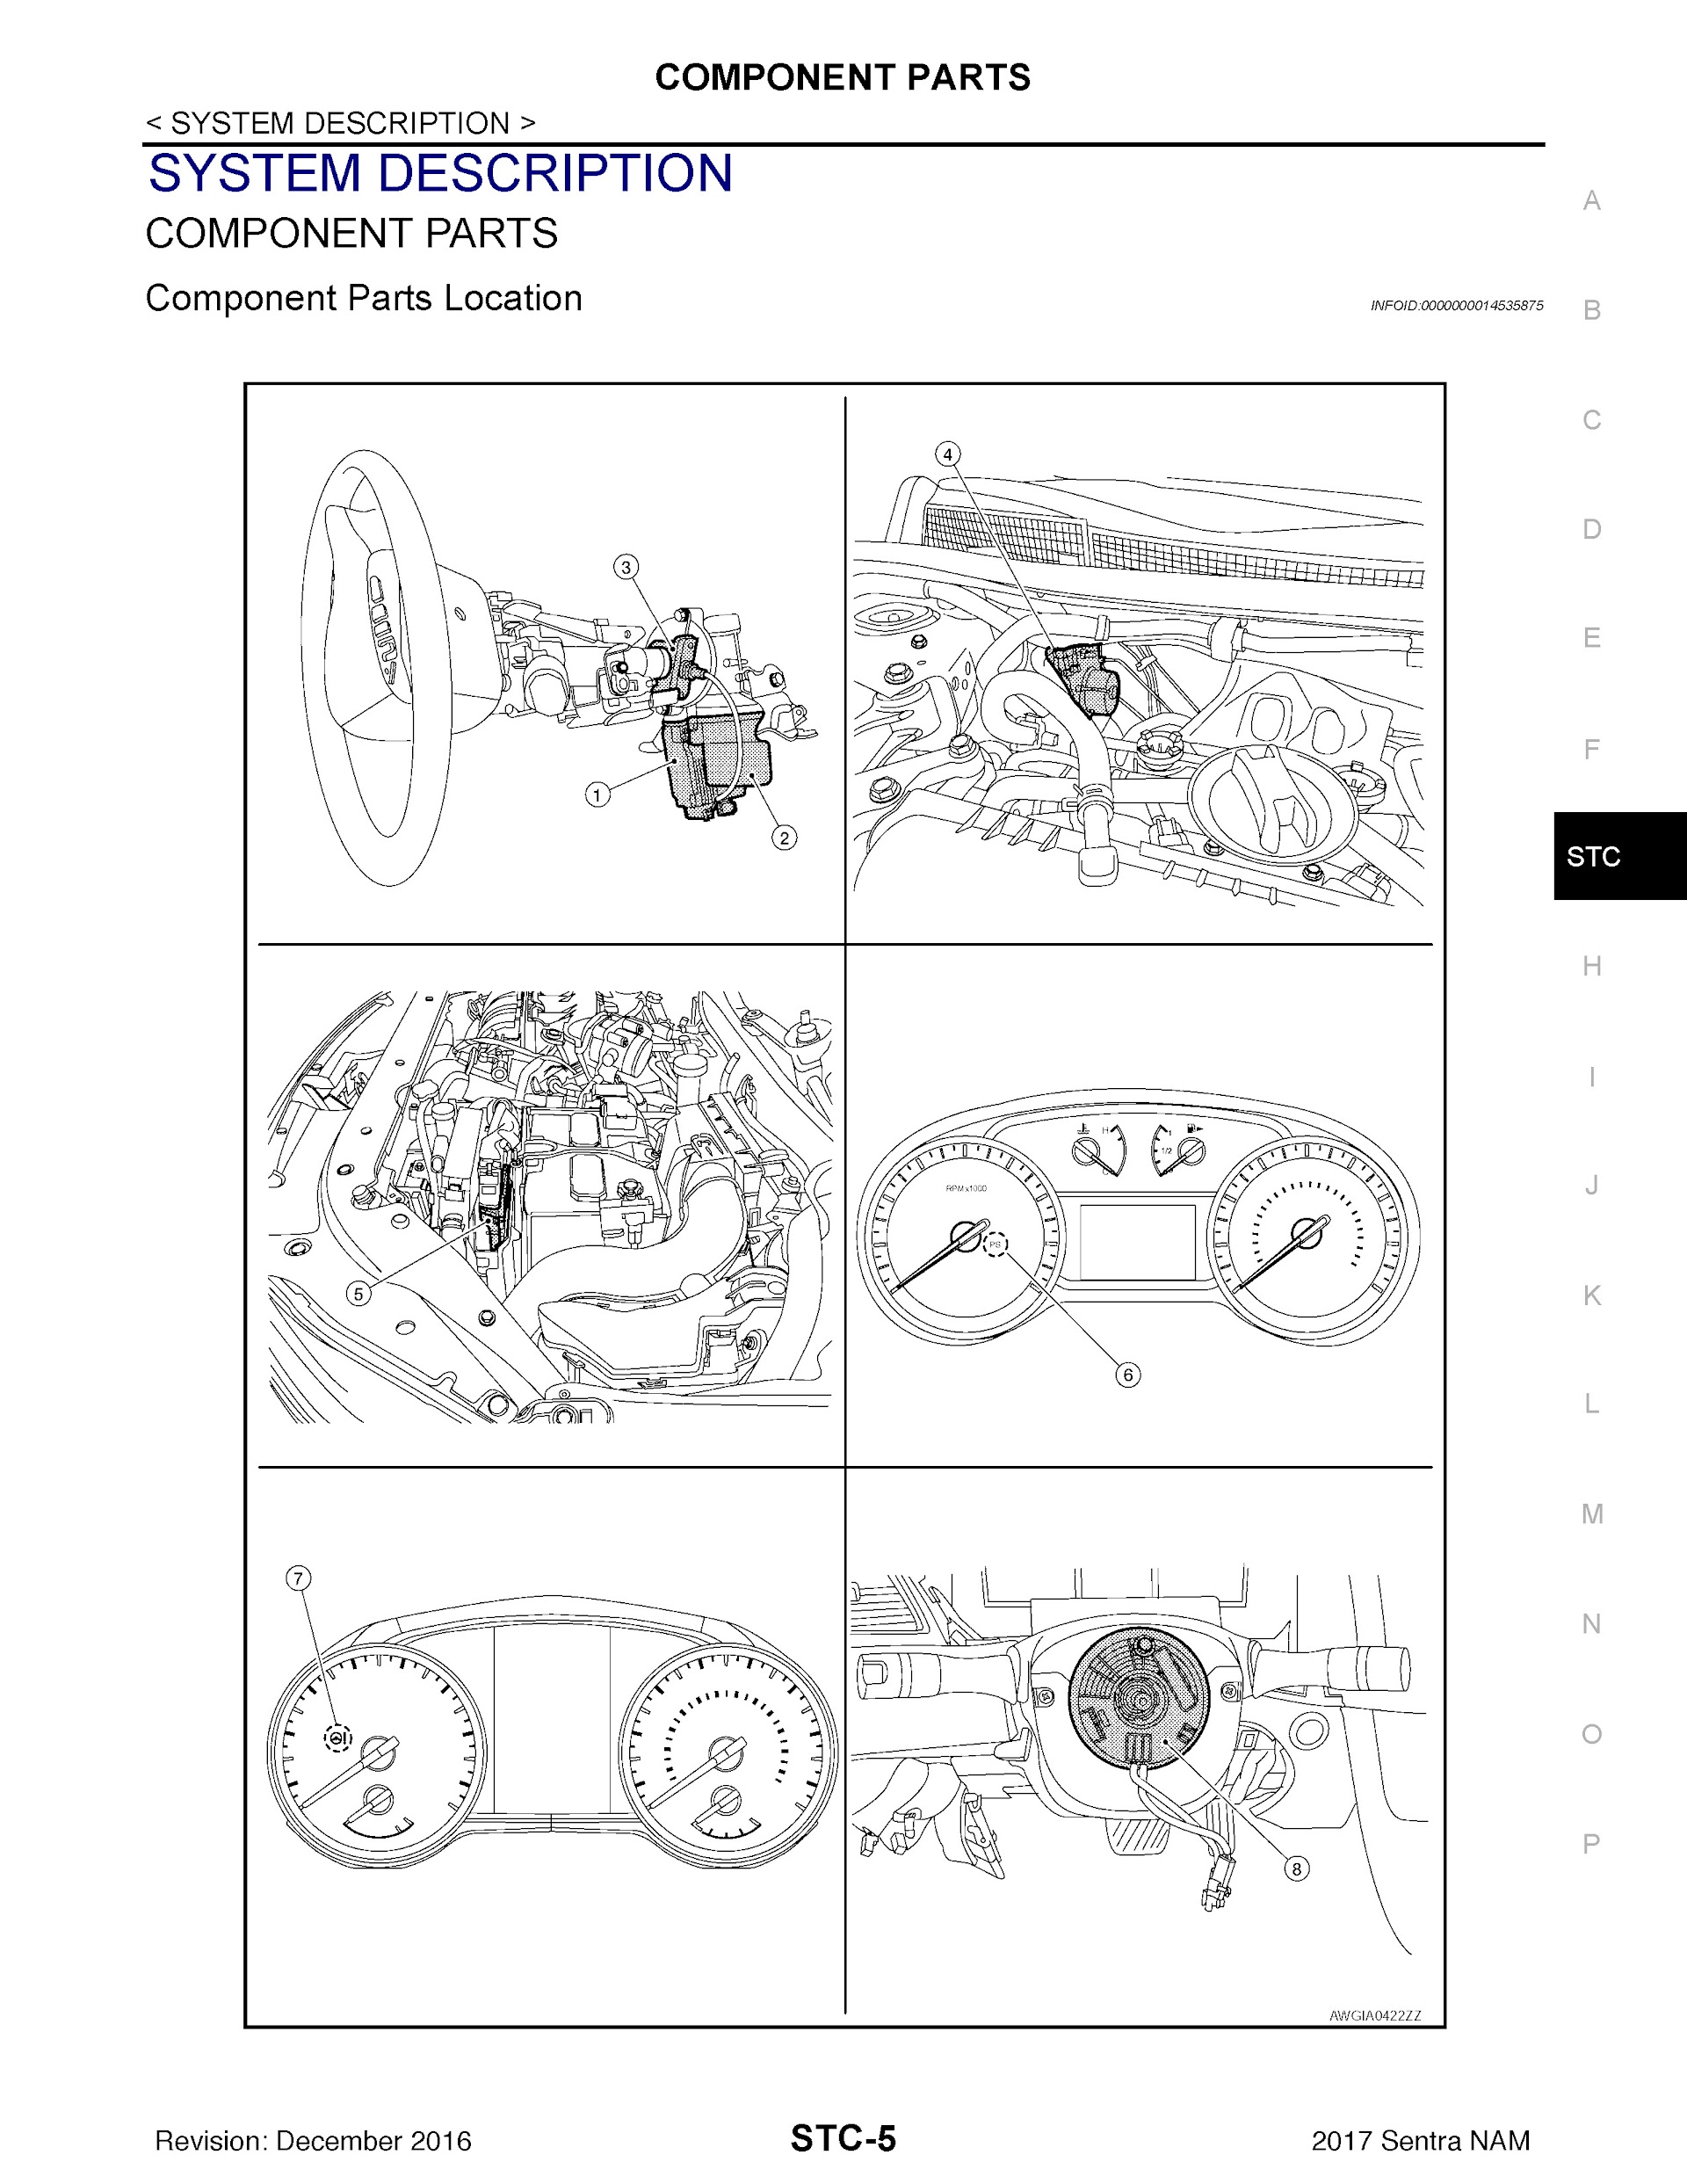 2017 Nissan Sentra Repair Manual, Component Parts